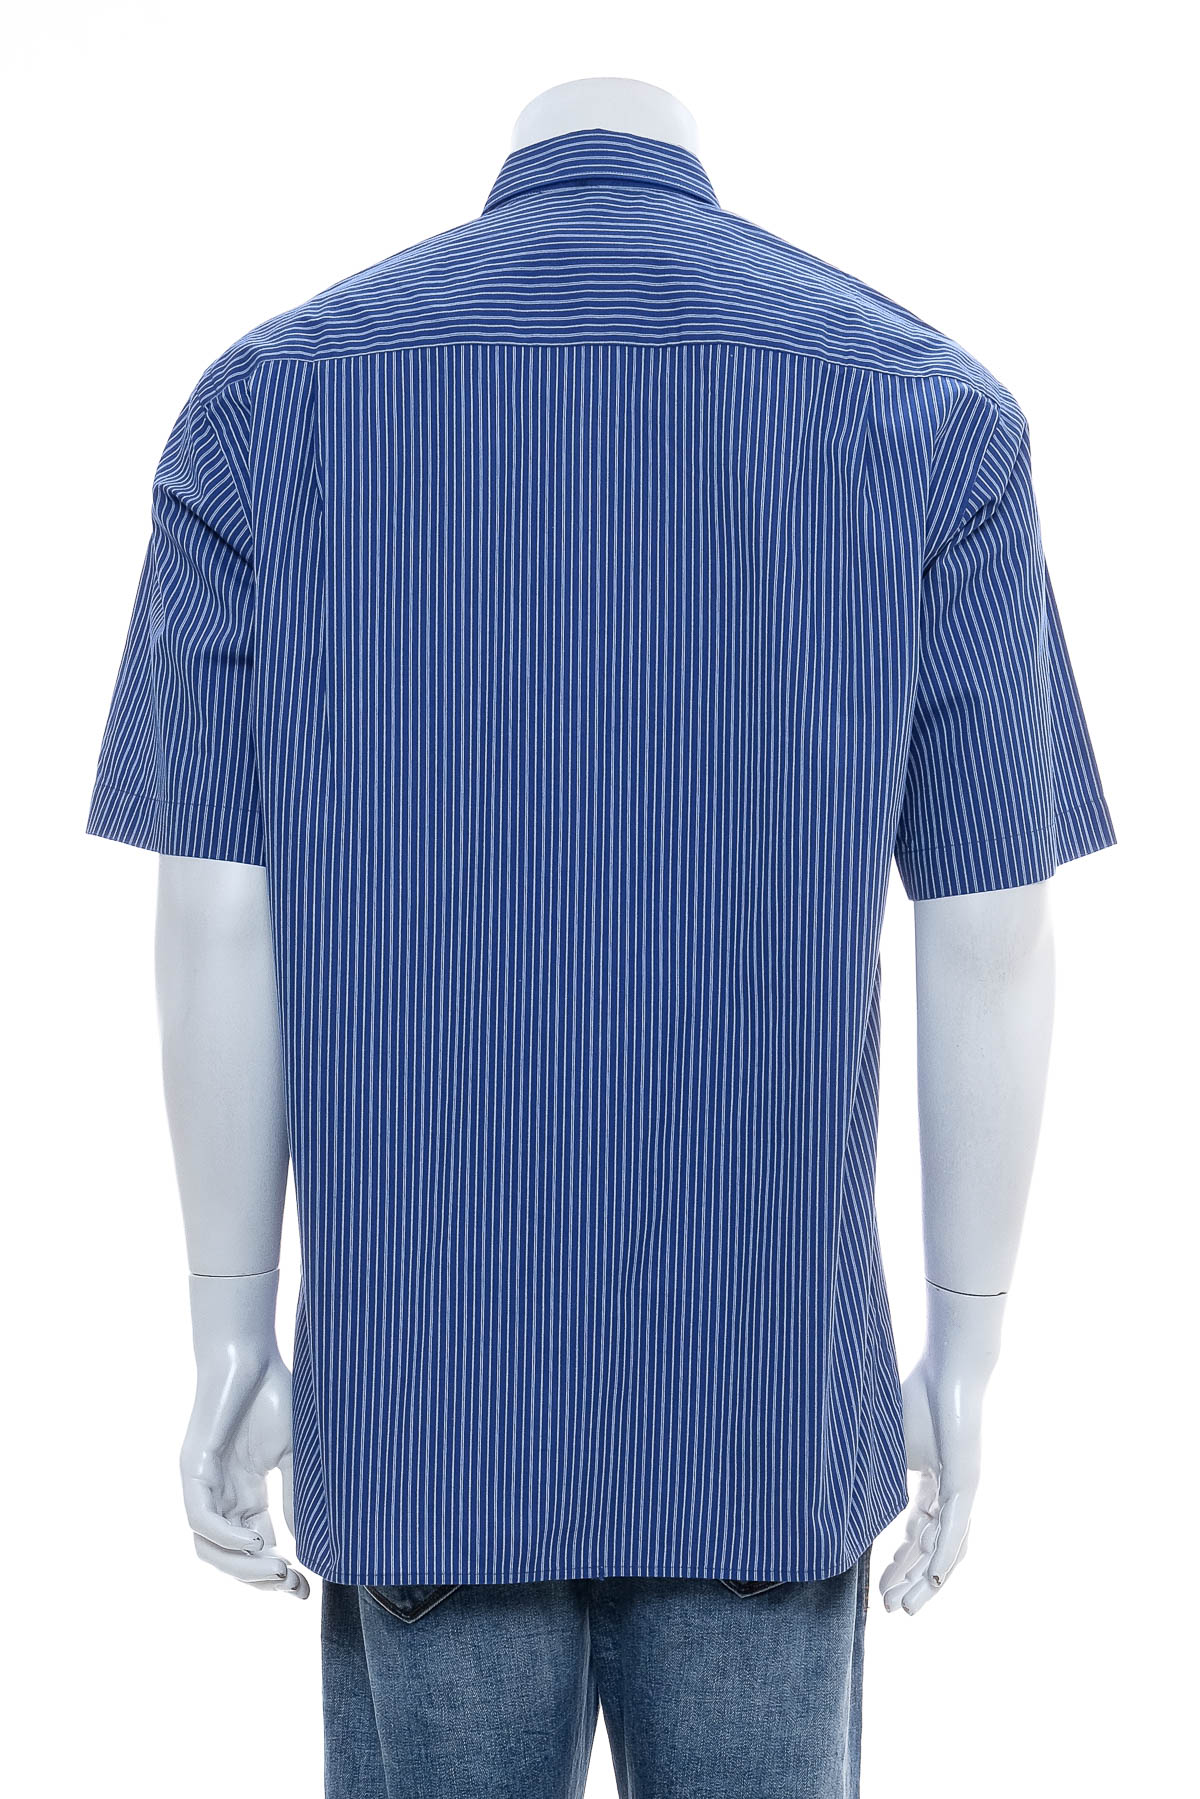 Ανδρικό πουκάμισο - SEIDEN STICKER - 1